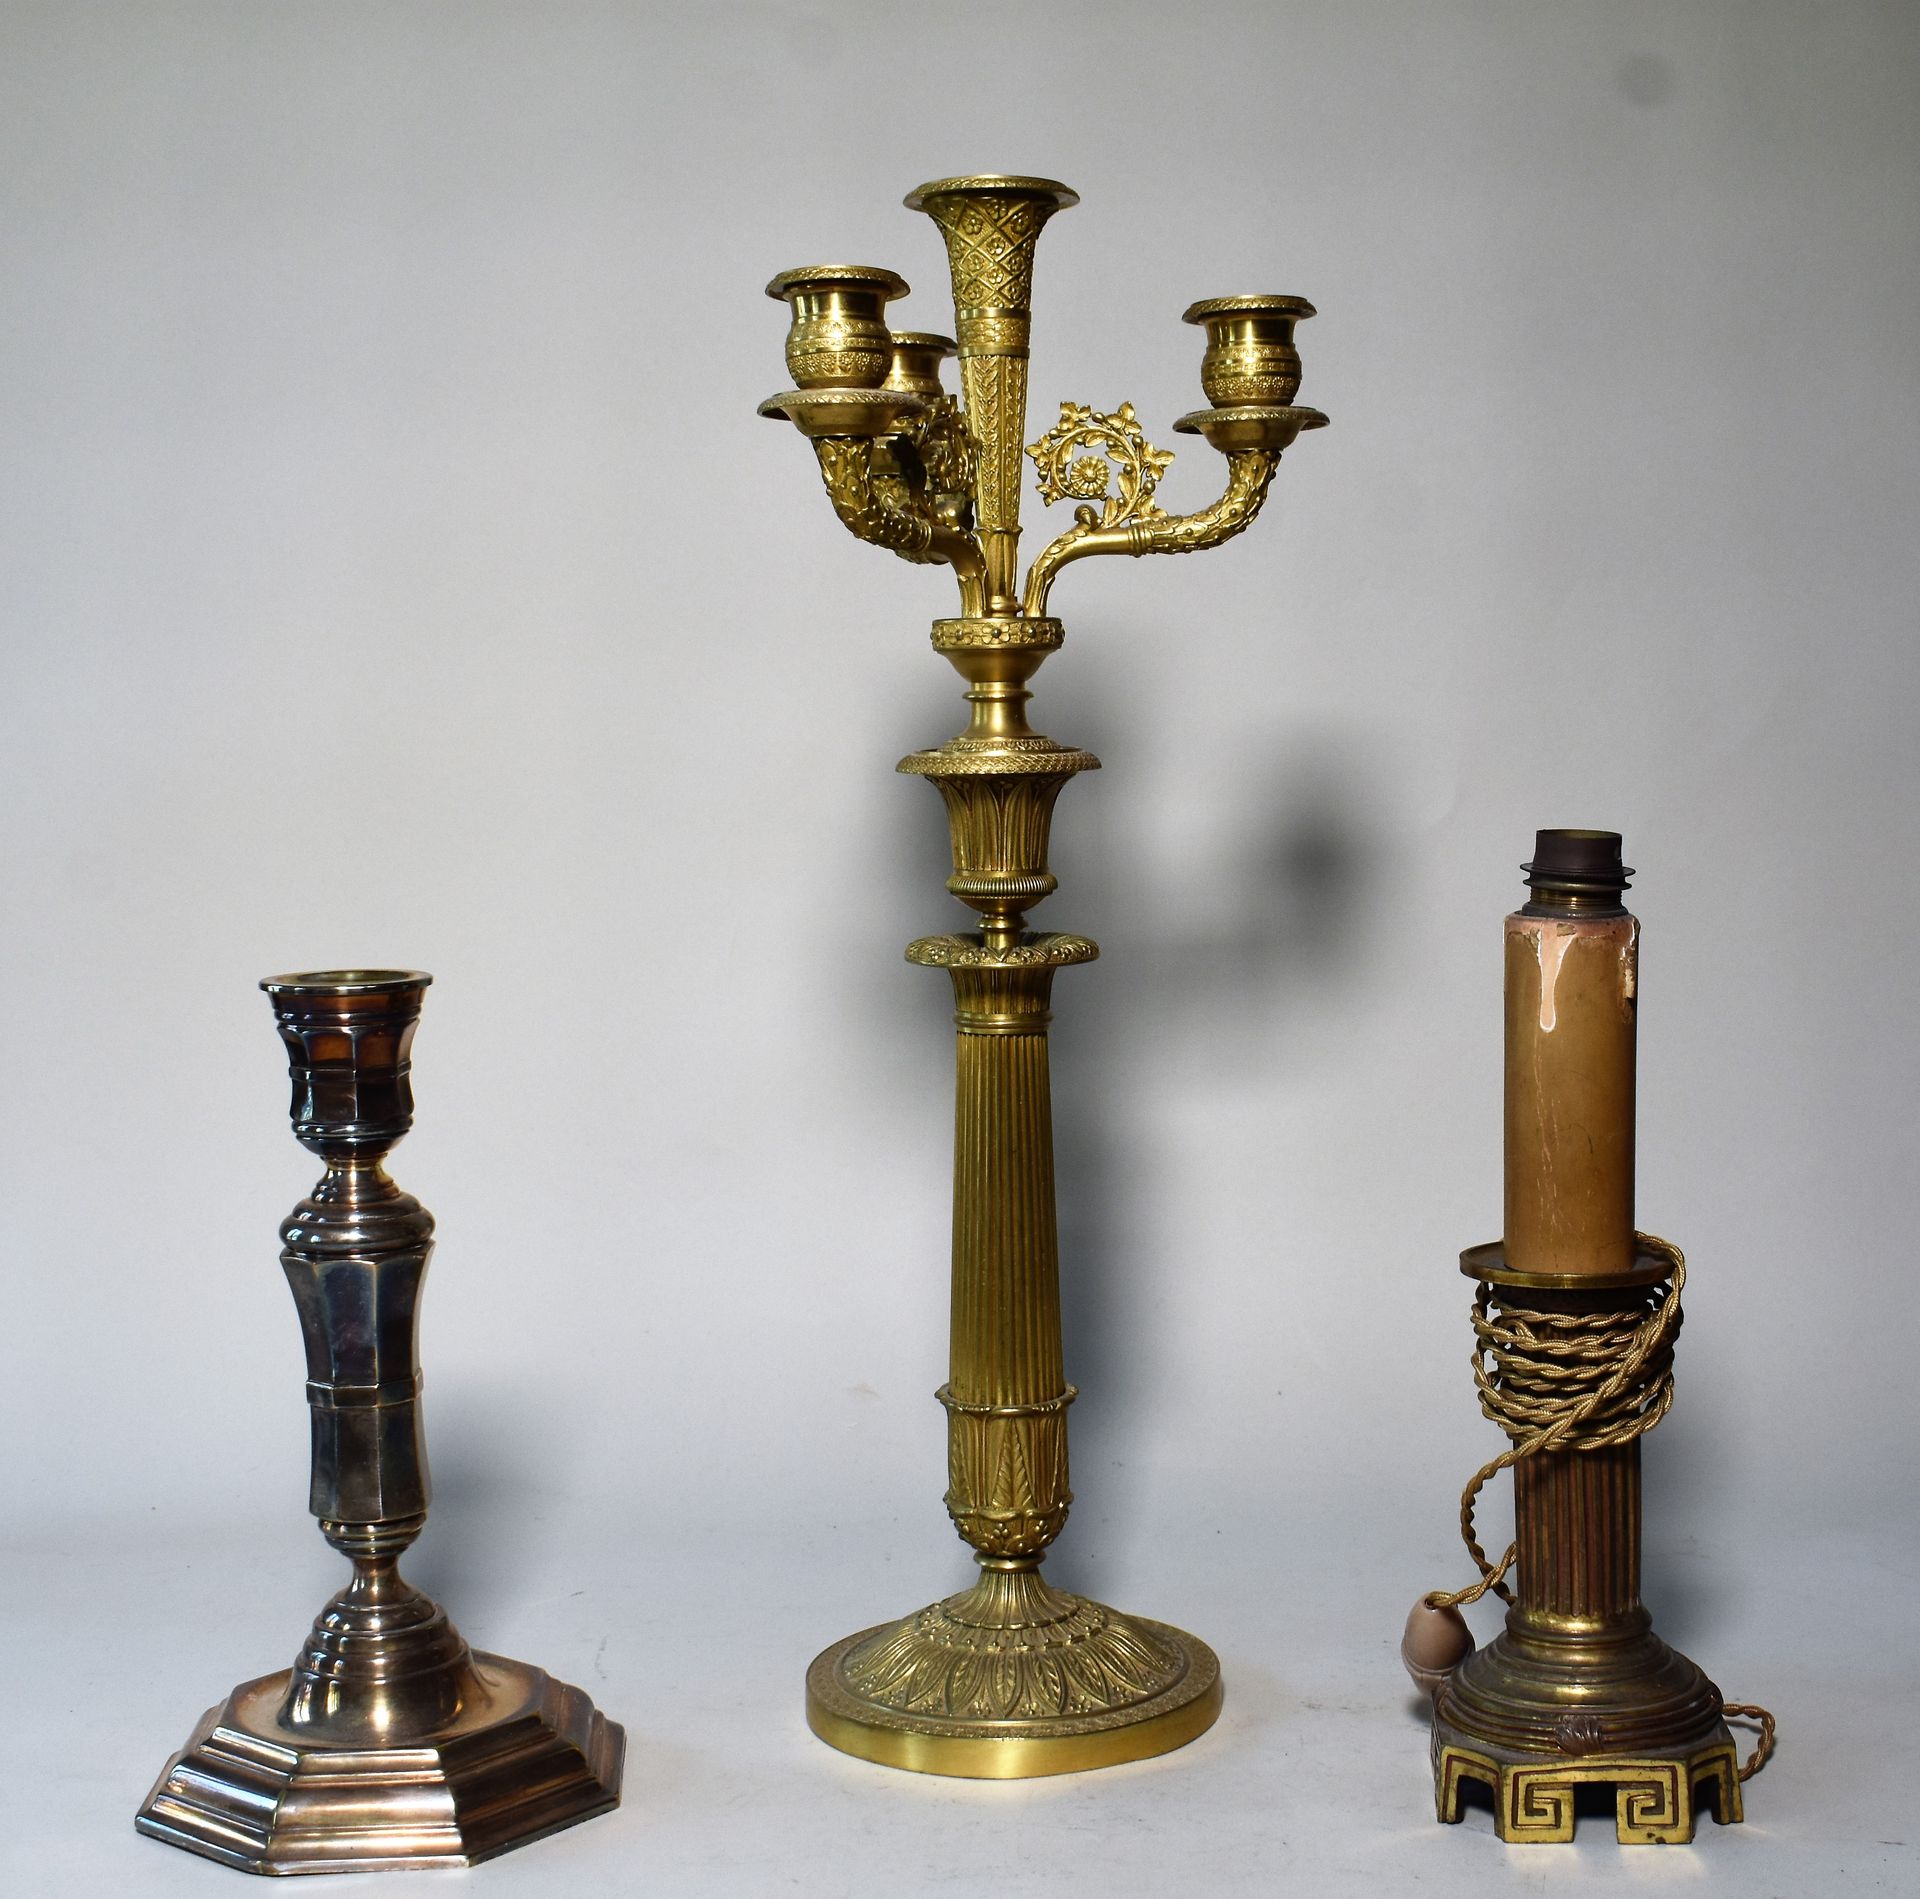 Null 19世纪的一个四灯鎏金铜烛台。高48厘米

联合：两只杂色蜡烛。高度为16和25厘米

交付给书房的地段